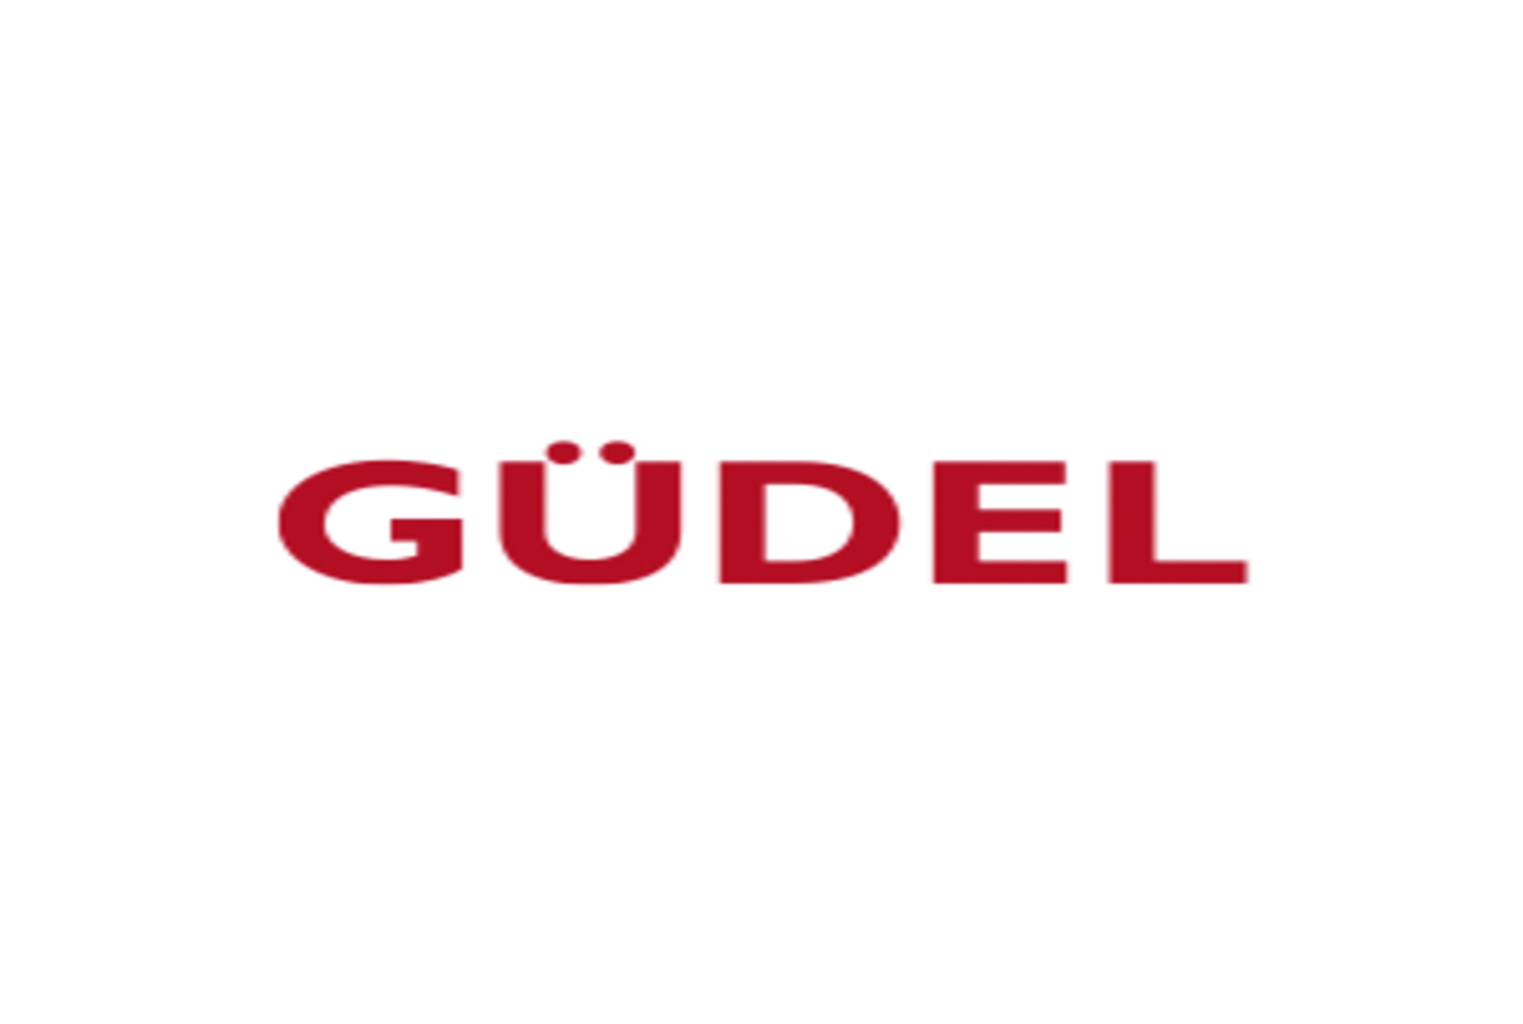 Gudel-logo